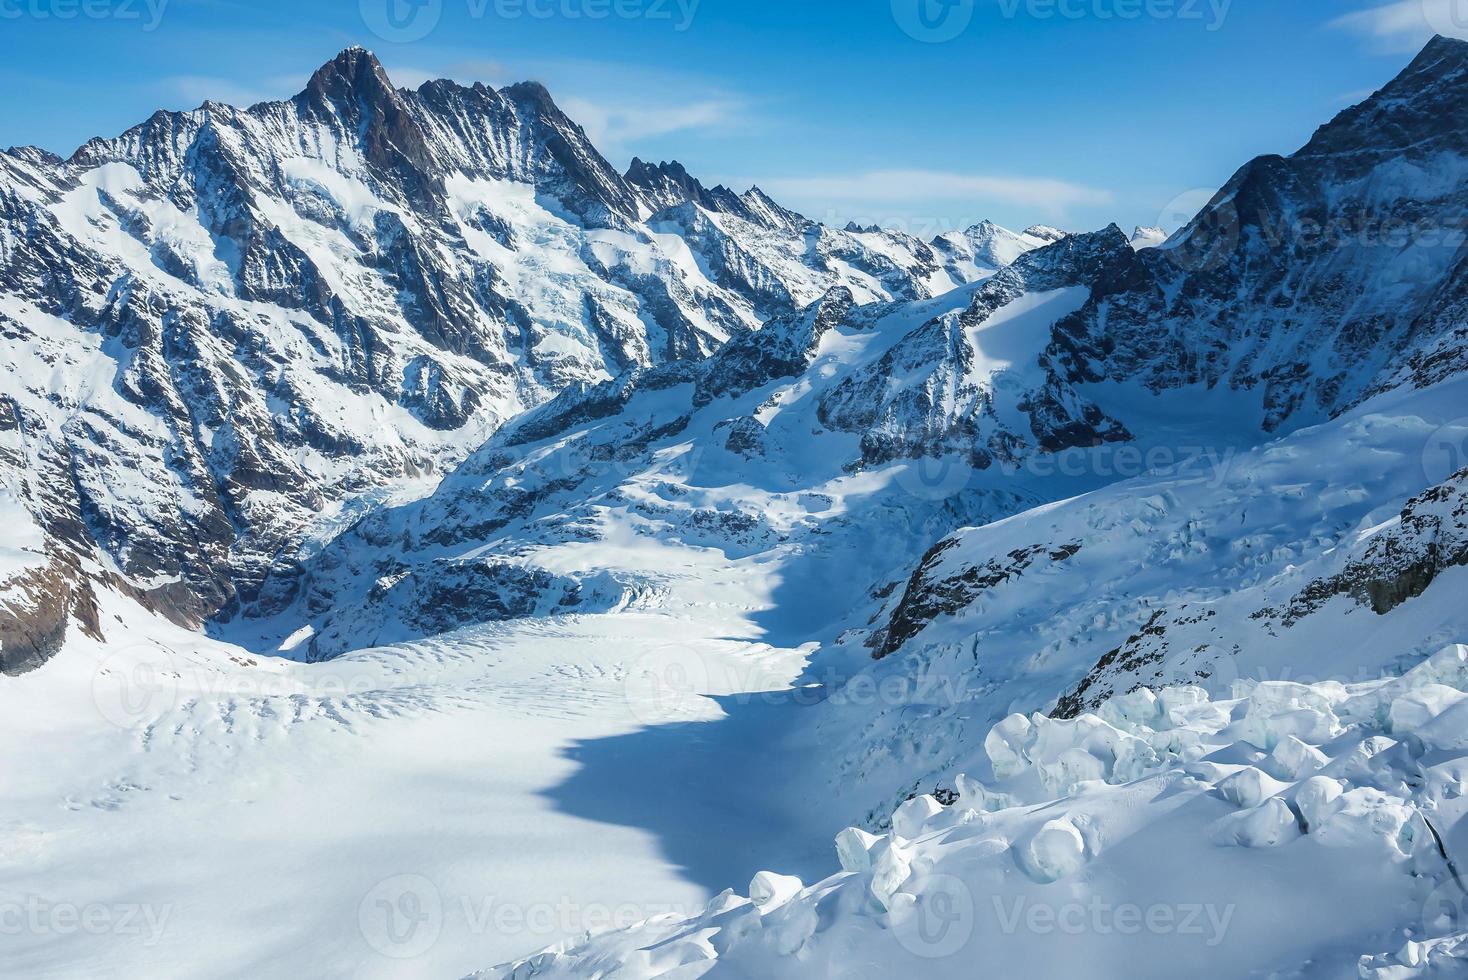 Magie Aussicht von das Alpen Berge im Schweiz. Aussicht von Hubschrauber im schweizerisch Alpen. Berg Spitzen im Schnee. atemberaubend Aussicht von Jungfraujoch und das UNESCO Welt Erbe - - das aletsch Gletscher foto